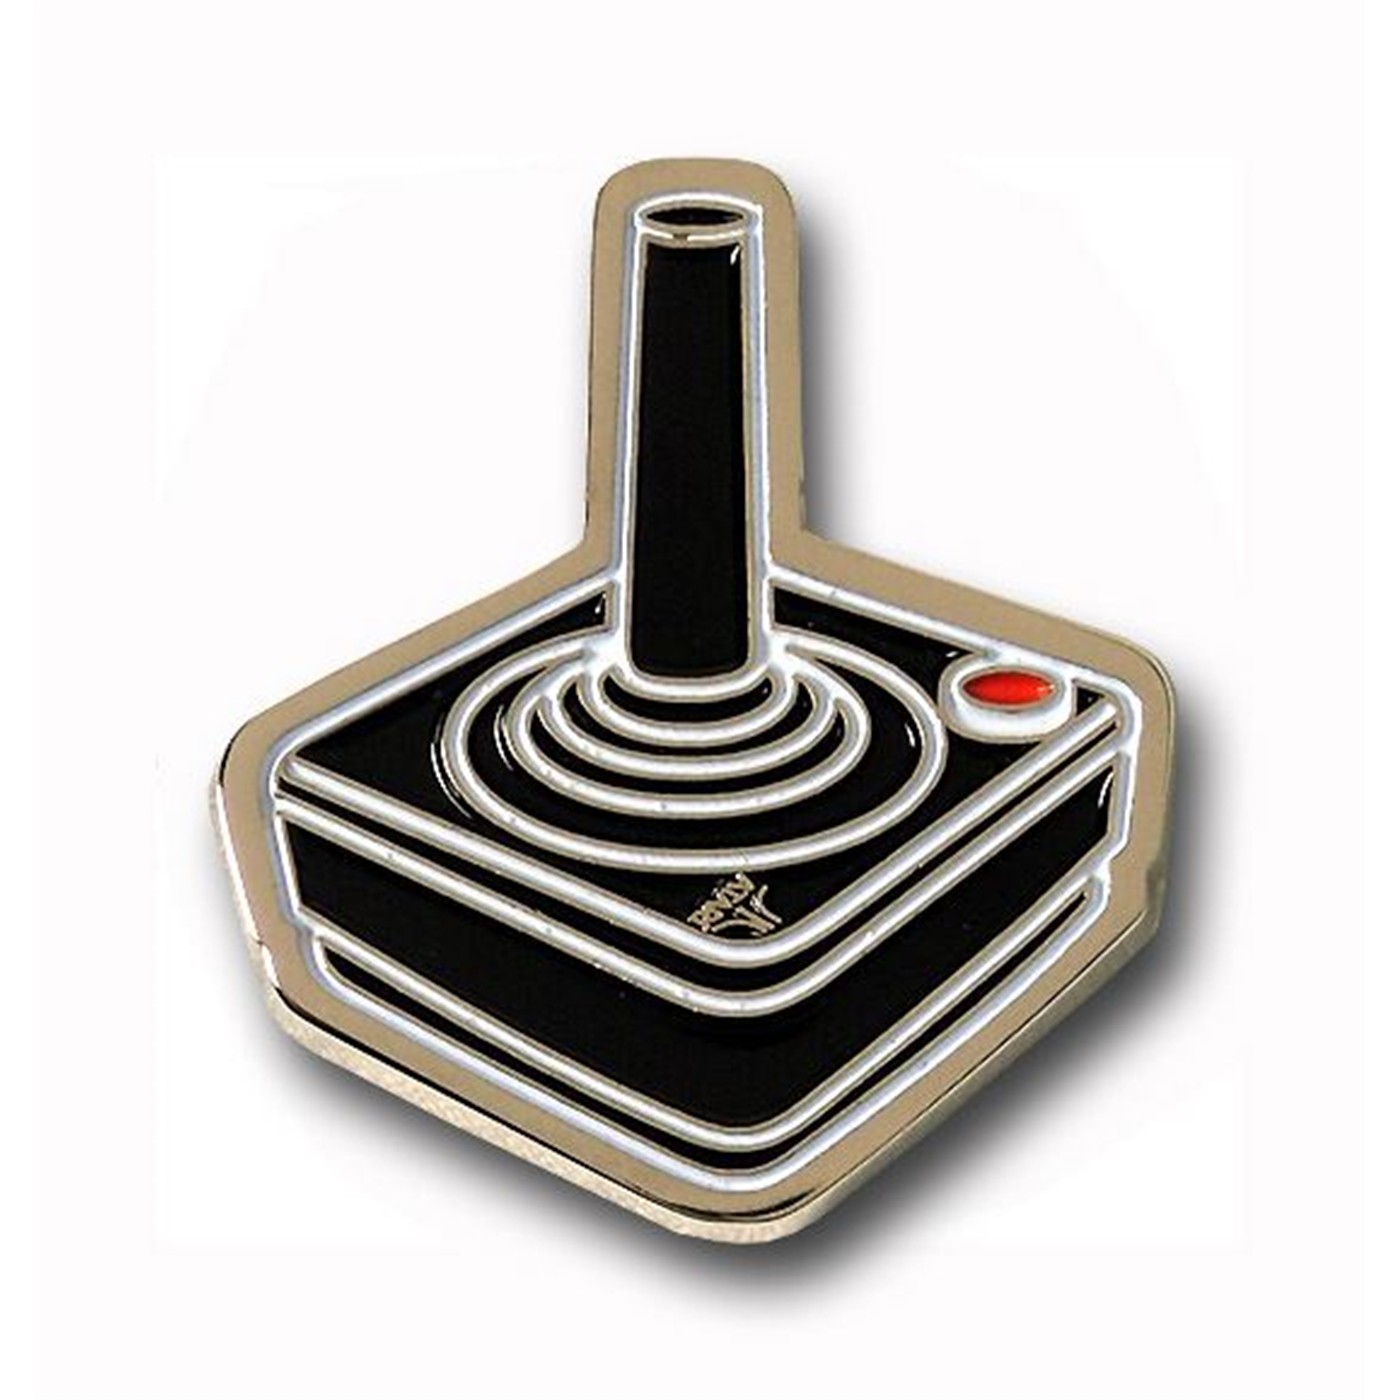 Atari Joystick Metal Pin